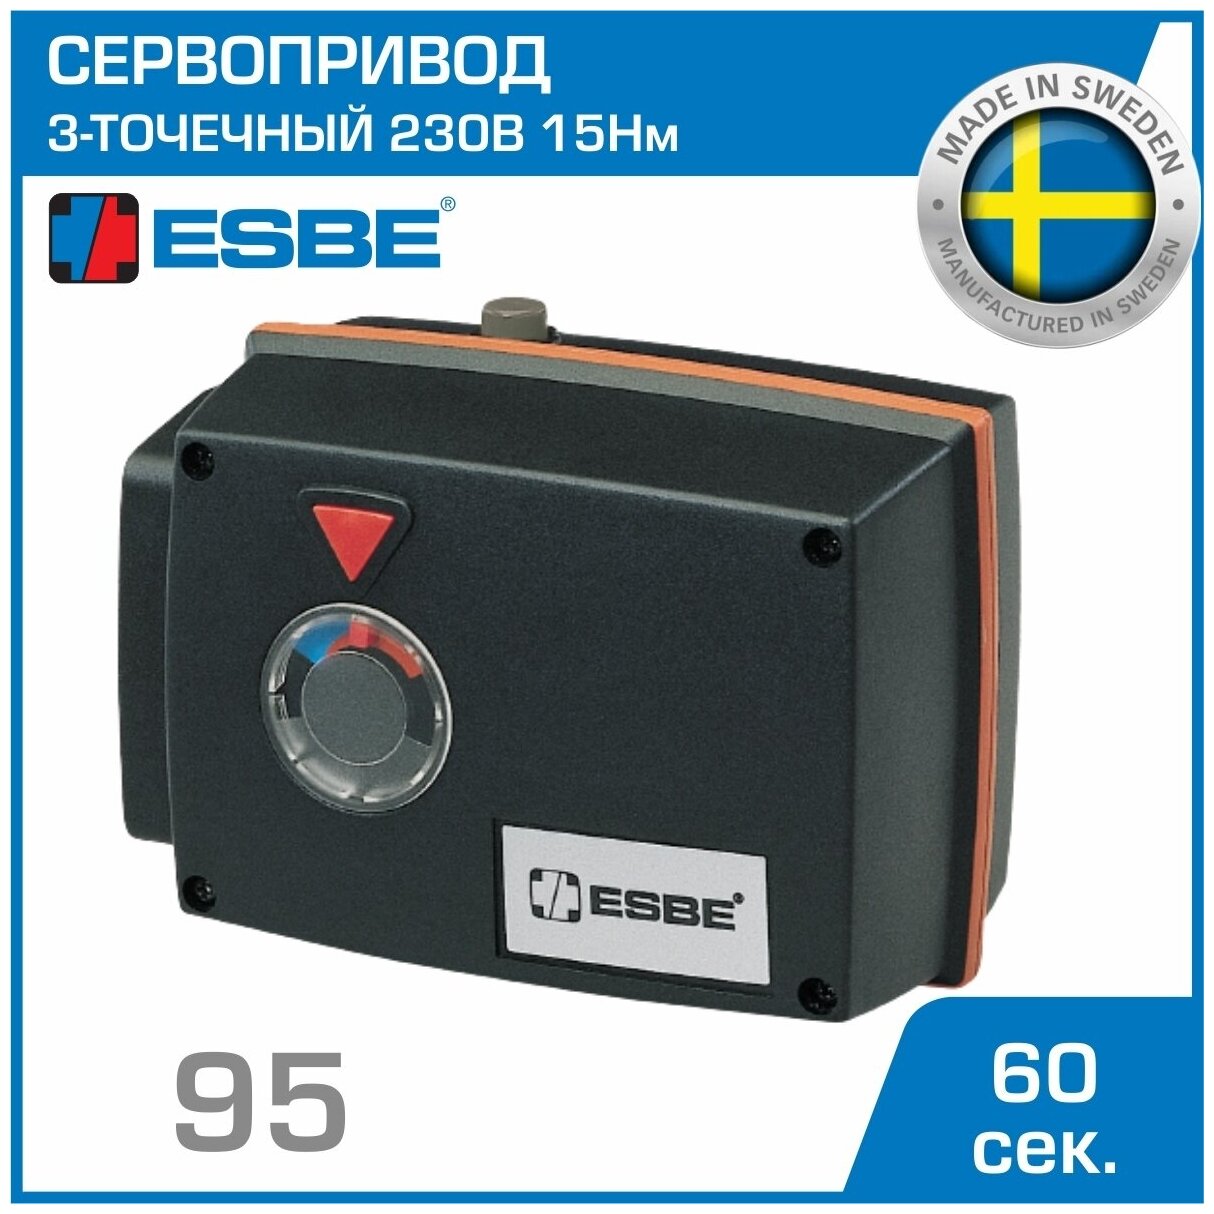 Электропривод ESBE 95 (12051900) с 3-точечным сигналом SPDT 230В 15Нм 50Гц 60сек / Для управления смесительными клапанами серии F / трехточечный